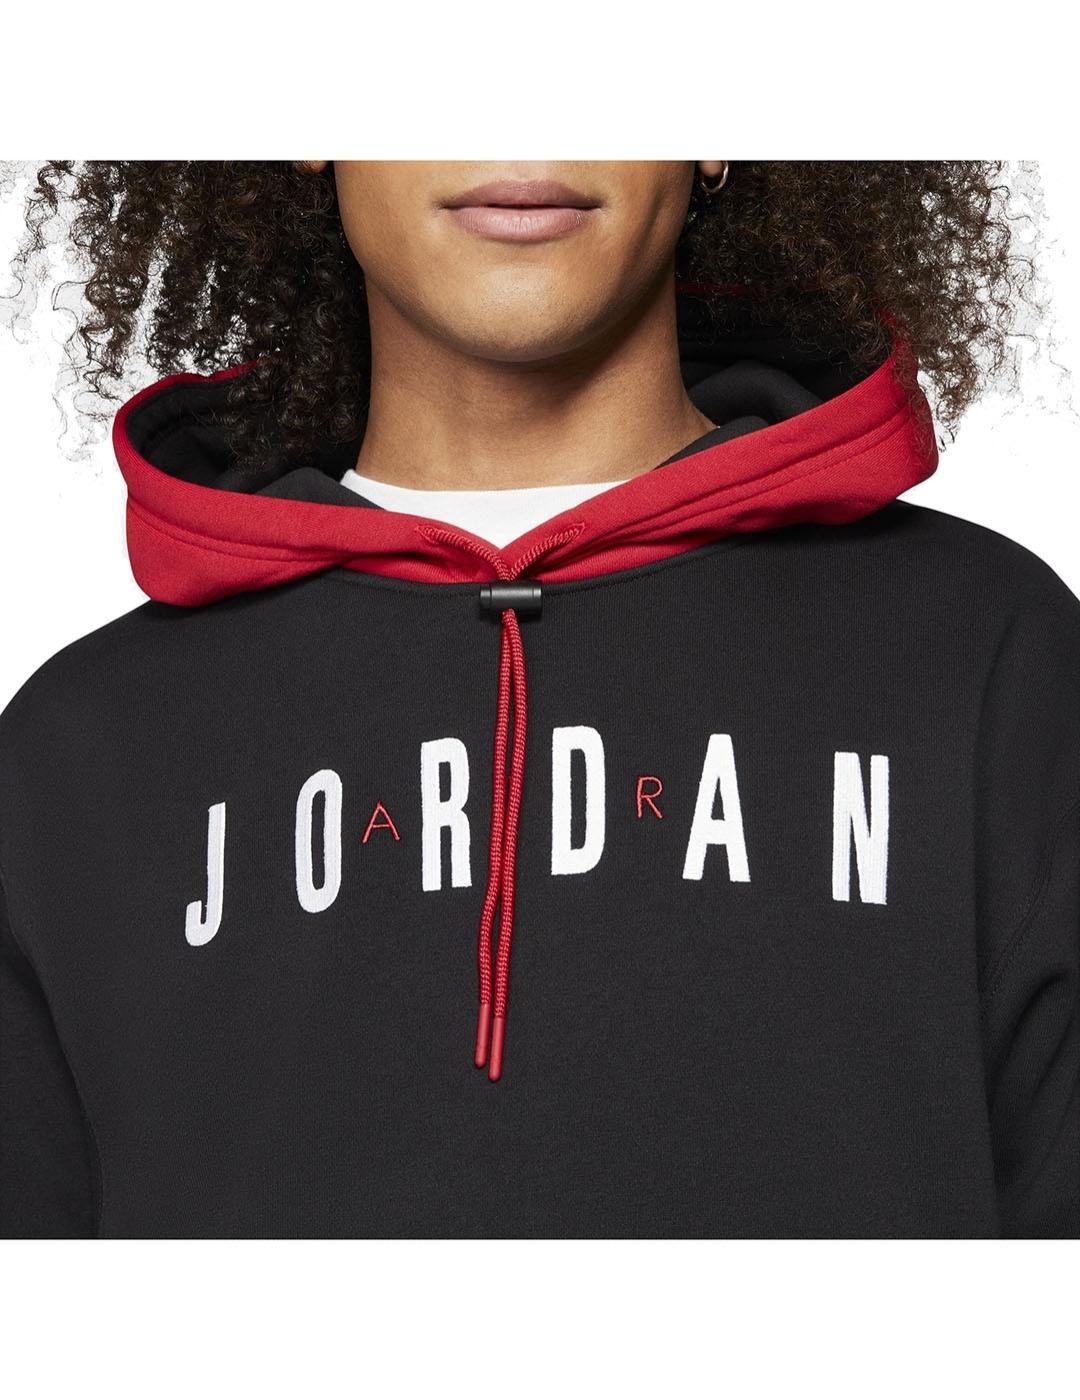 Sudaderas Negras Hombre Jordan, Nike Jordan